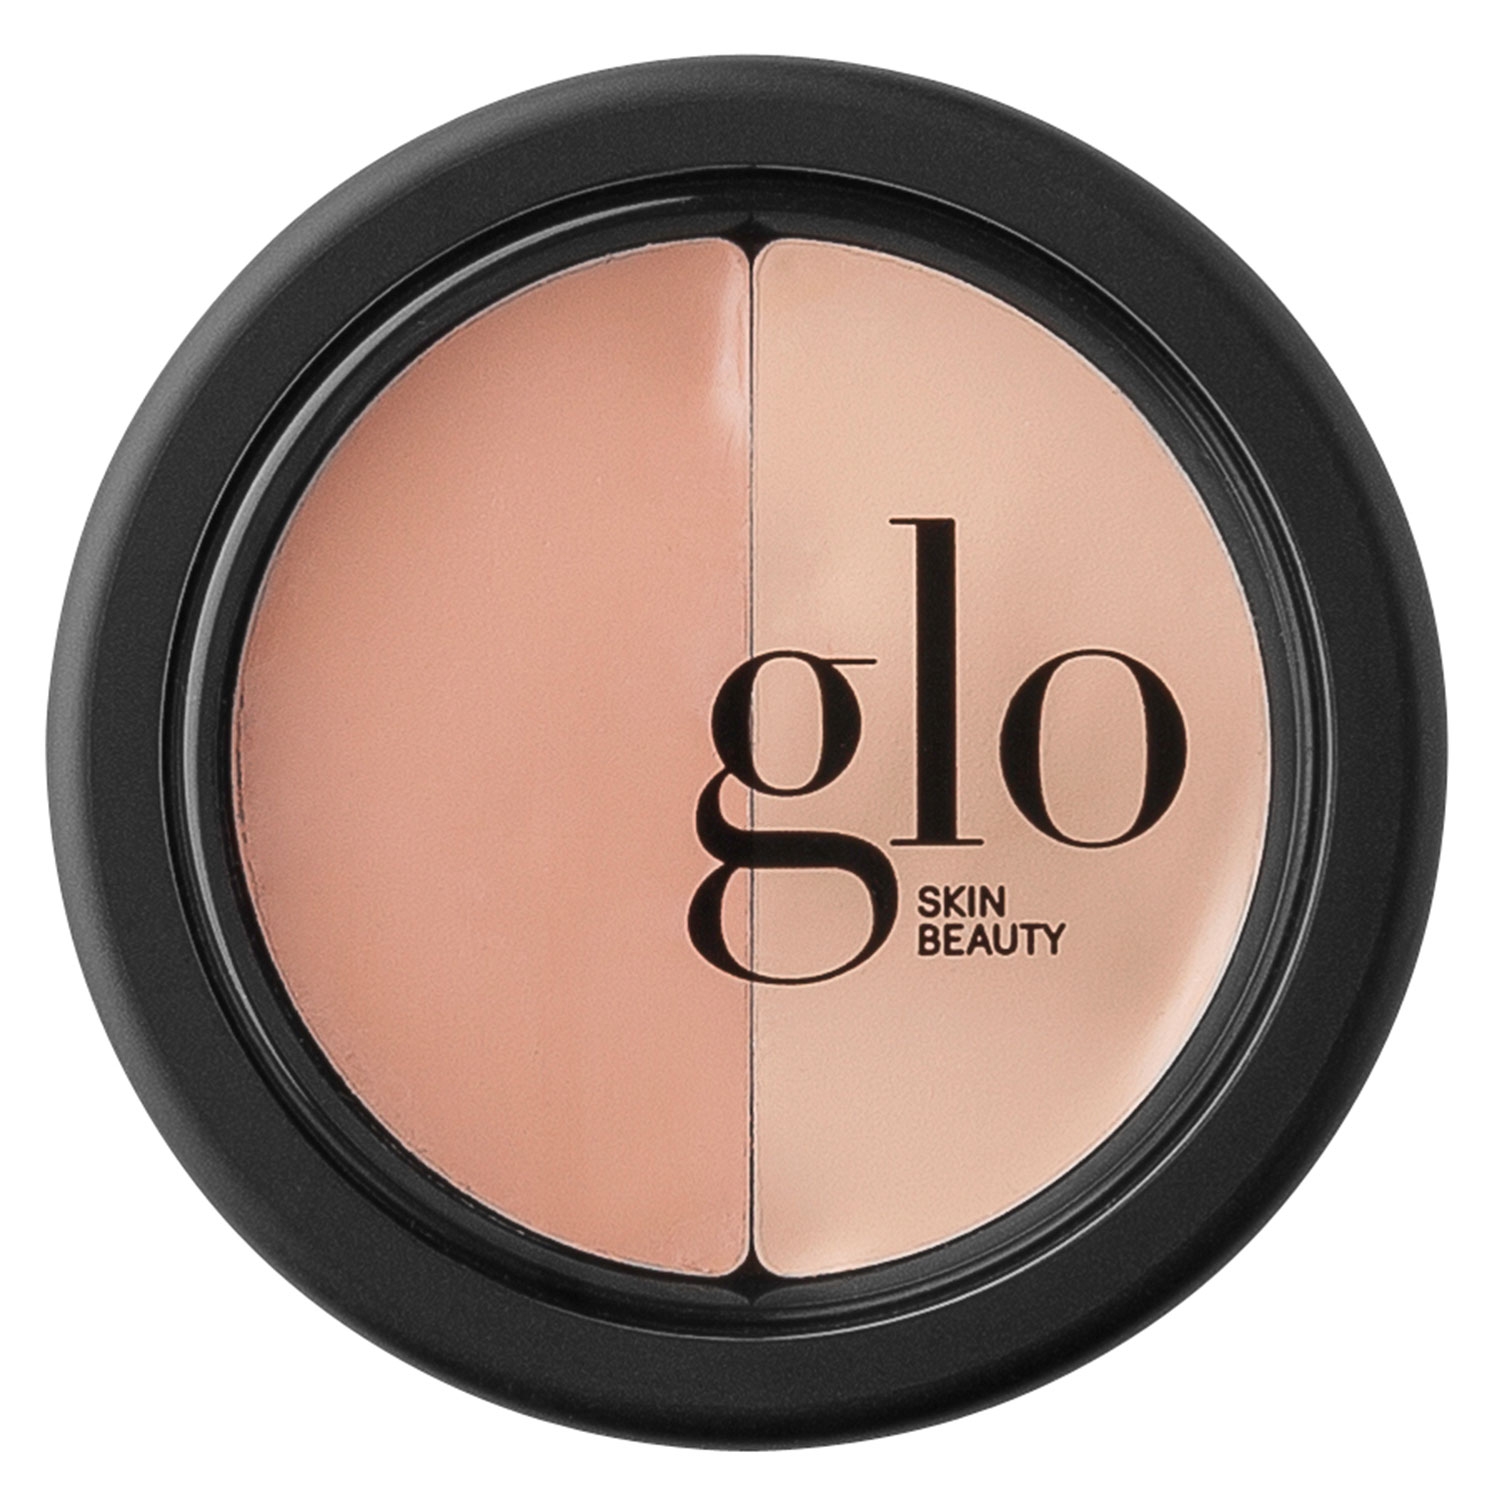 Produktbild von Glo Skin Beauty Concealer - Under Eye Concealer Beige